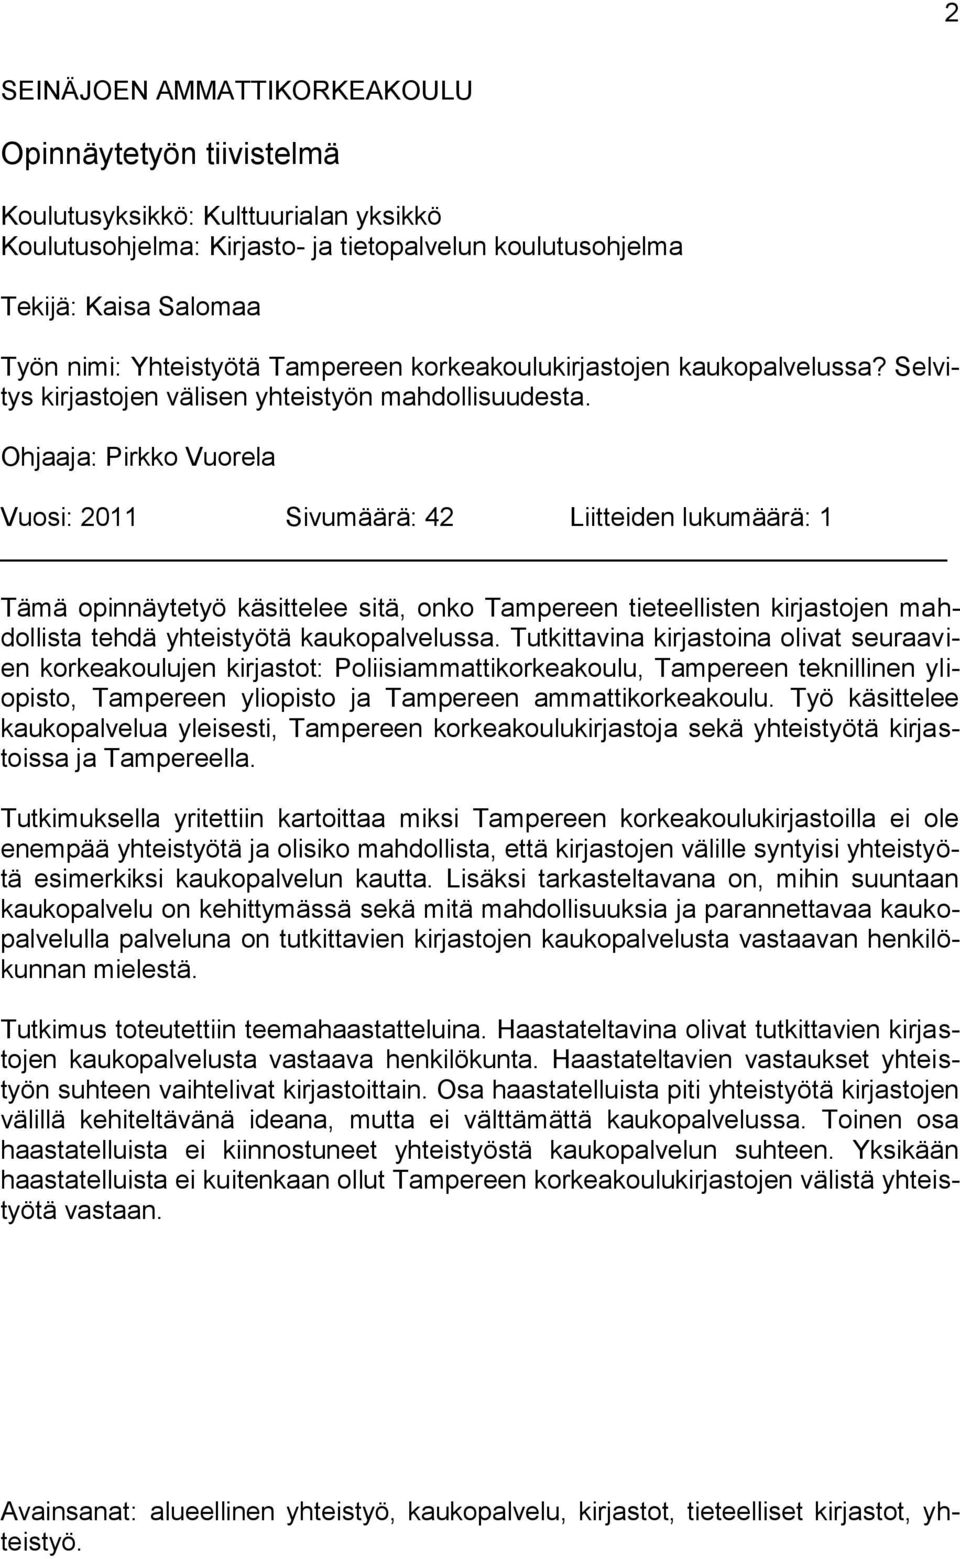 Ohjaaja: Pirkko Vuorela Vuosi: 2011 Sivumäärä: 42 Liitteiden lukumäärä: 1 Tämä opinnäytetyö käsittelee sitä, onko Tampereen tieteellisten kirjastojen mahdollista tehdä yhteistyötä kaukopalvelussa.